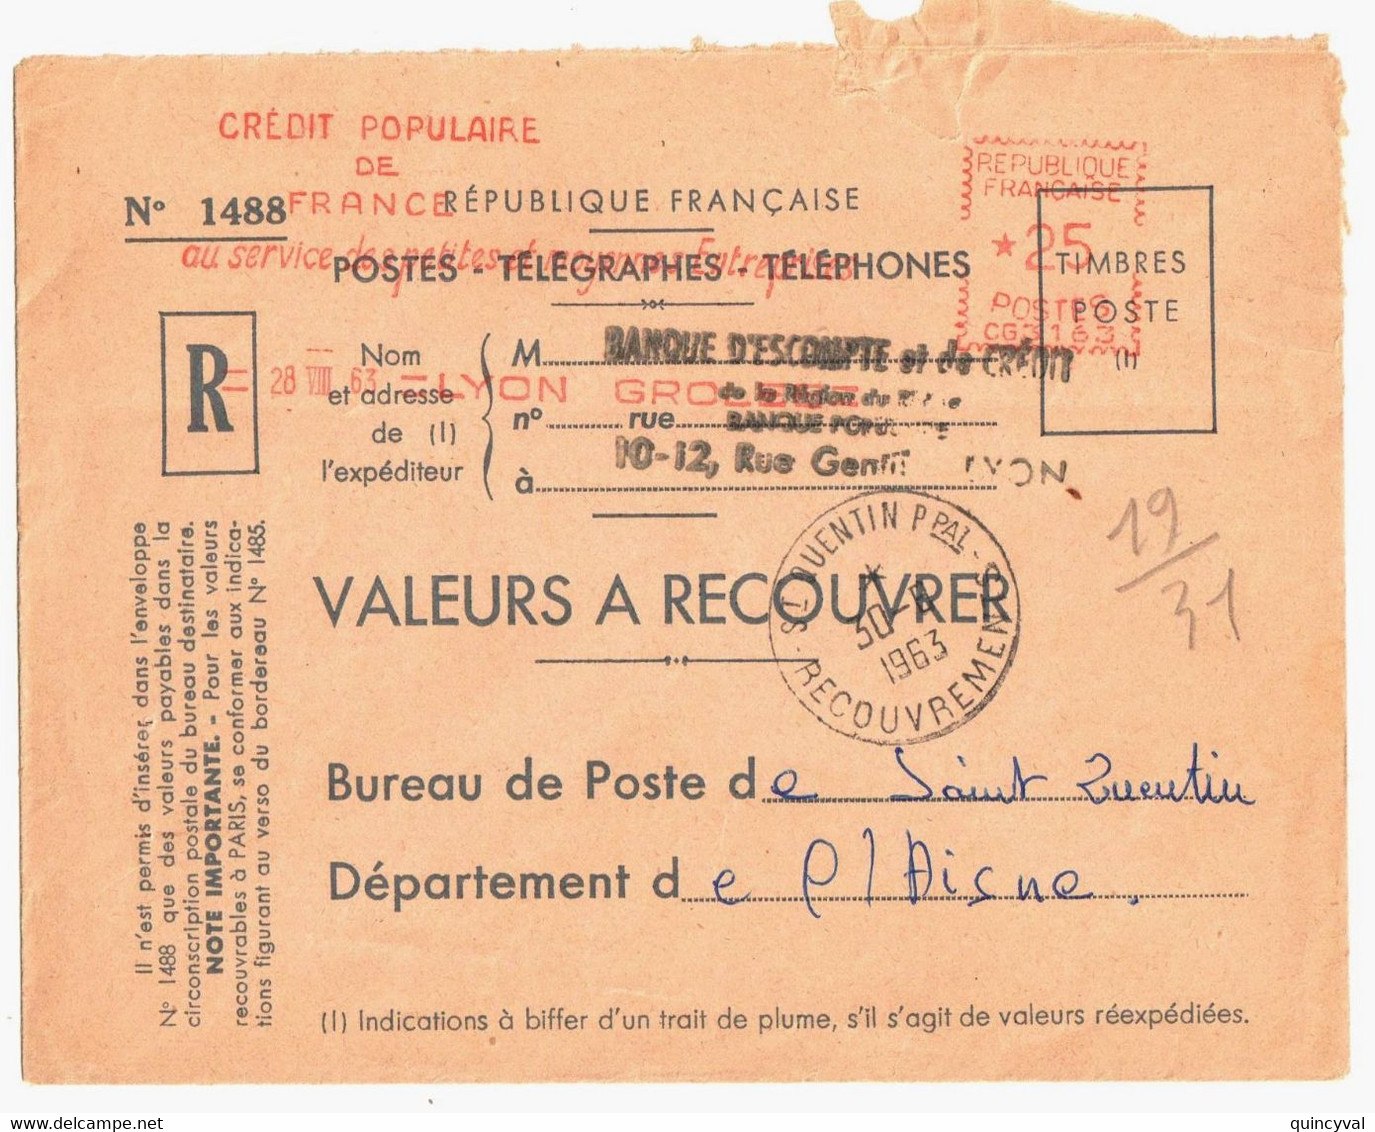 LYON  Valeurs à Recouvrer Env 1488 Ob 28 8 1963 EMA 25c CG 3163 Dest St QUENTIN Ppal RECOUVREMENTS   Aisne - EMA (Print Machine)